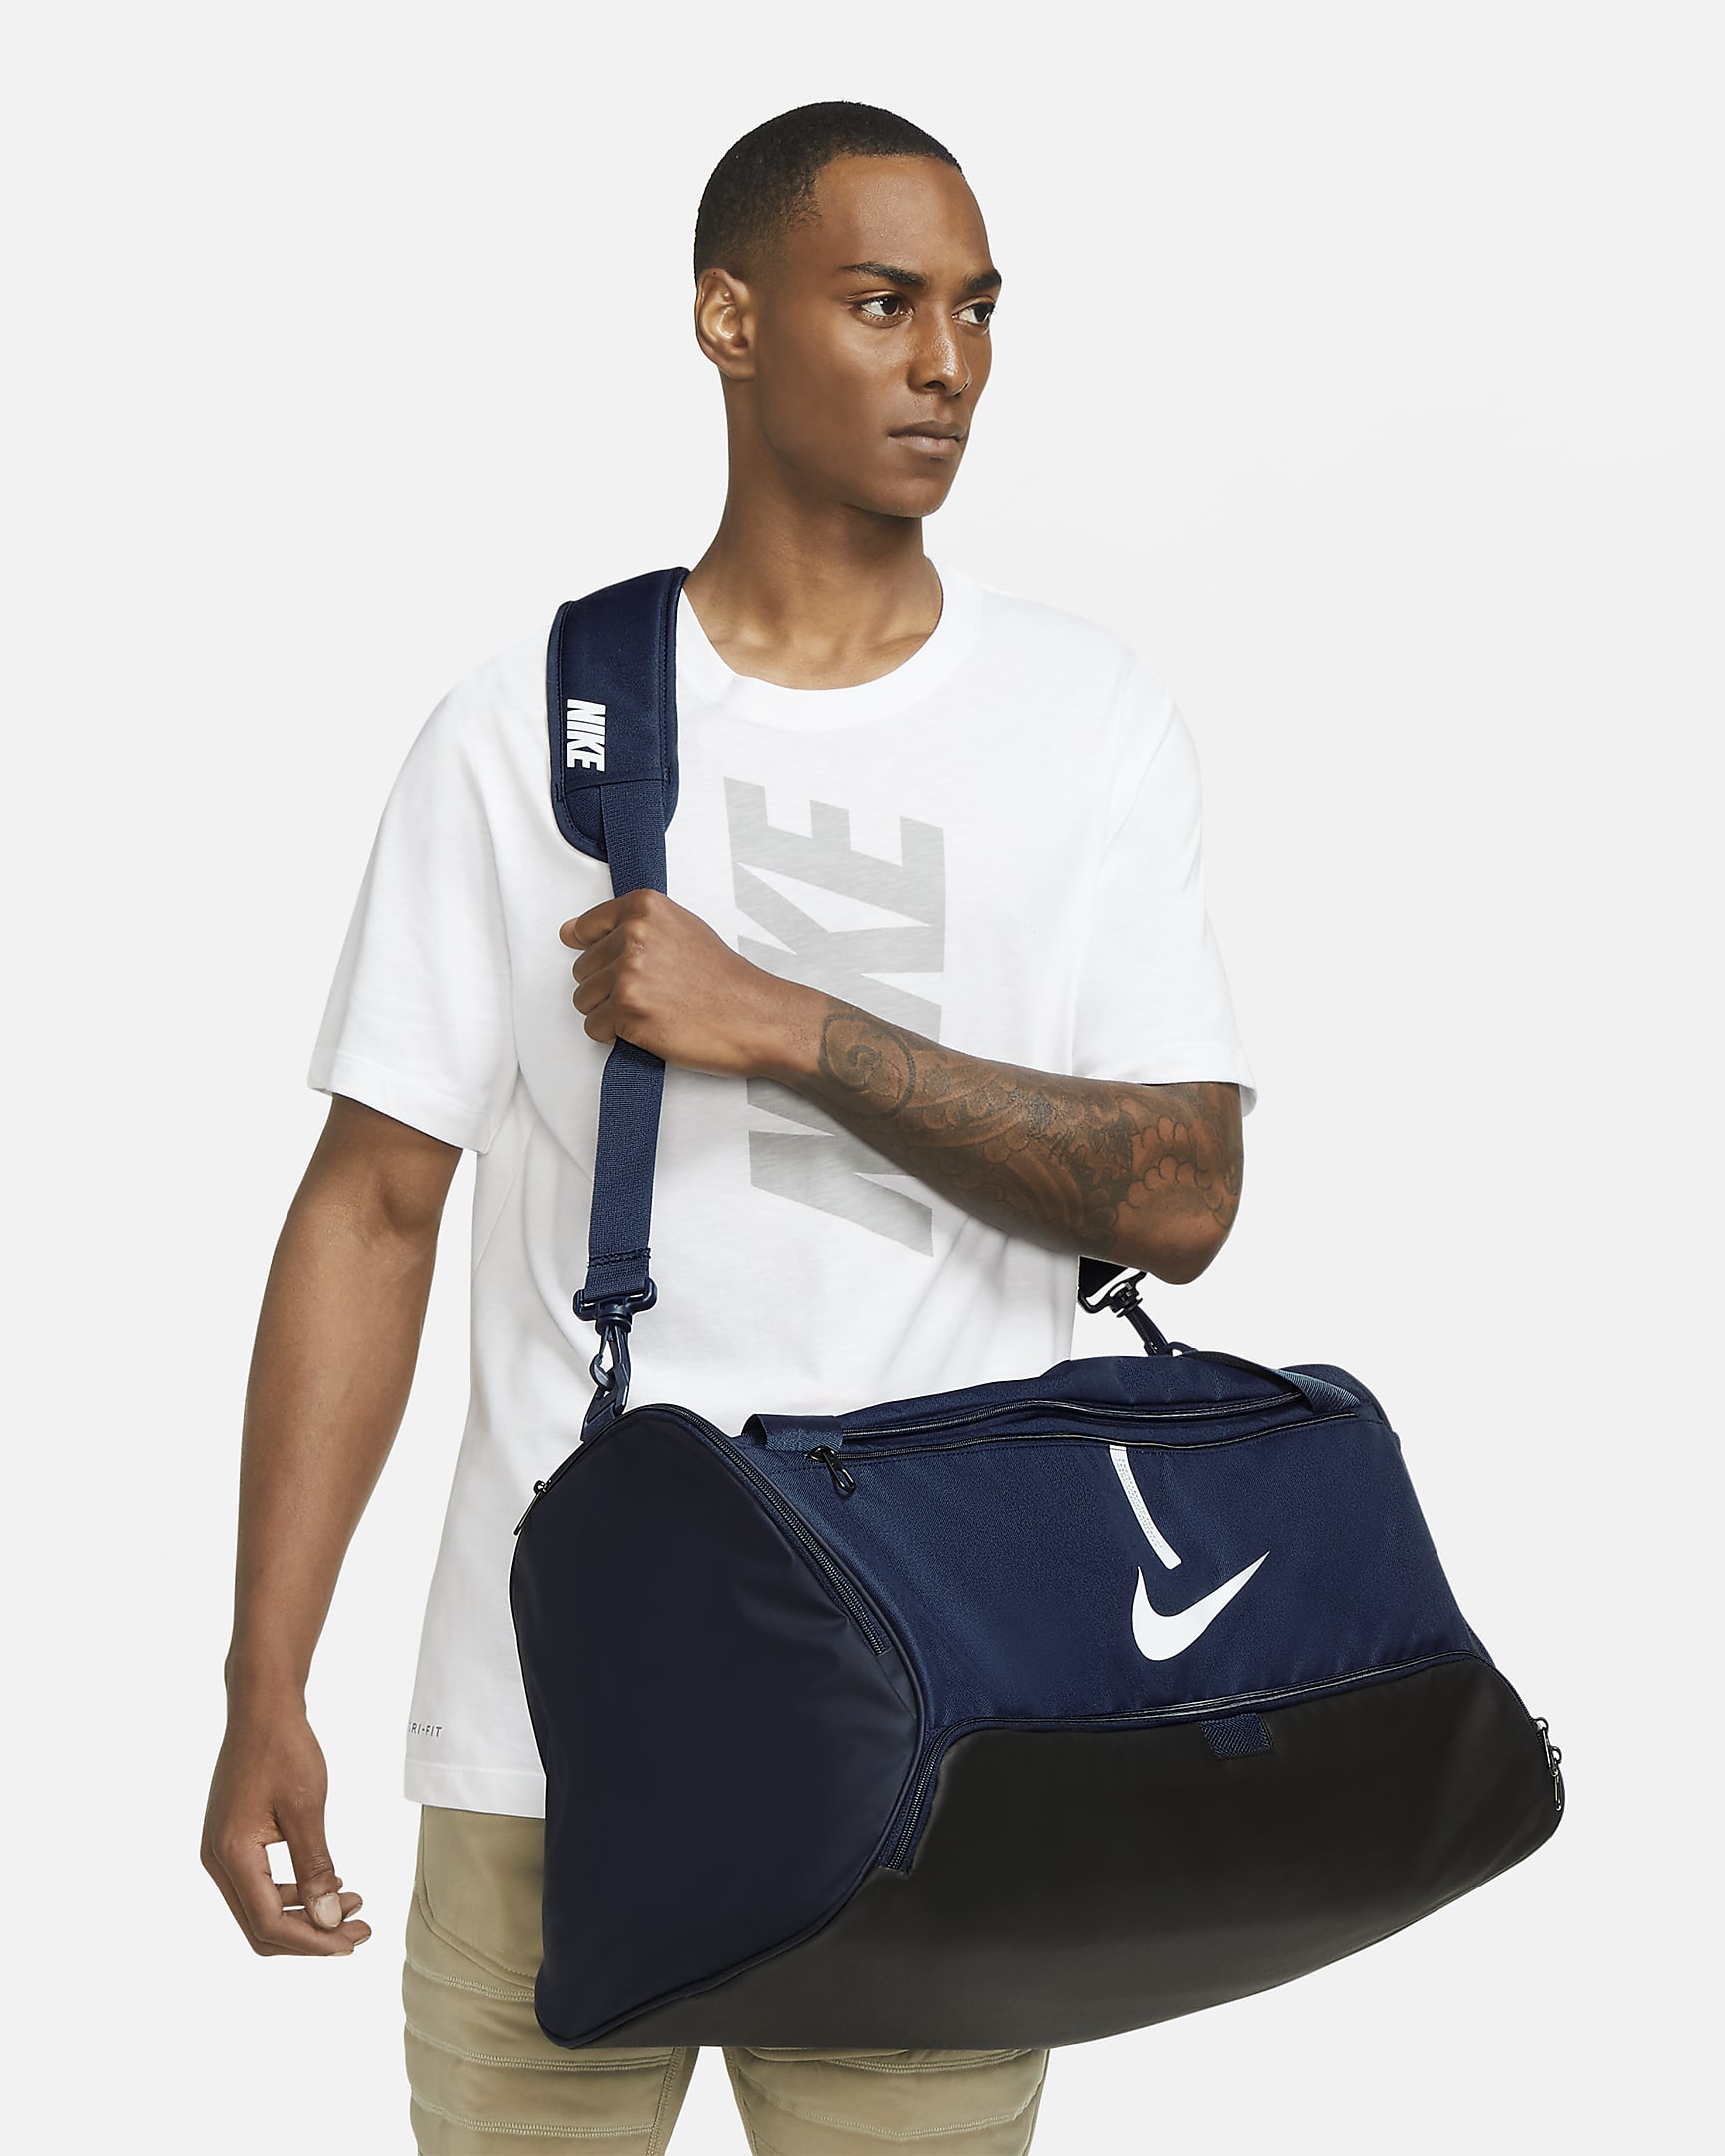 Nike Academy Team Football Duffel Bag (Medium, 60L). Nike IE